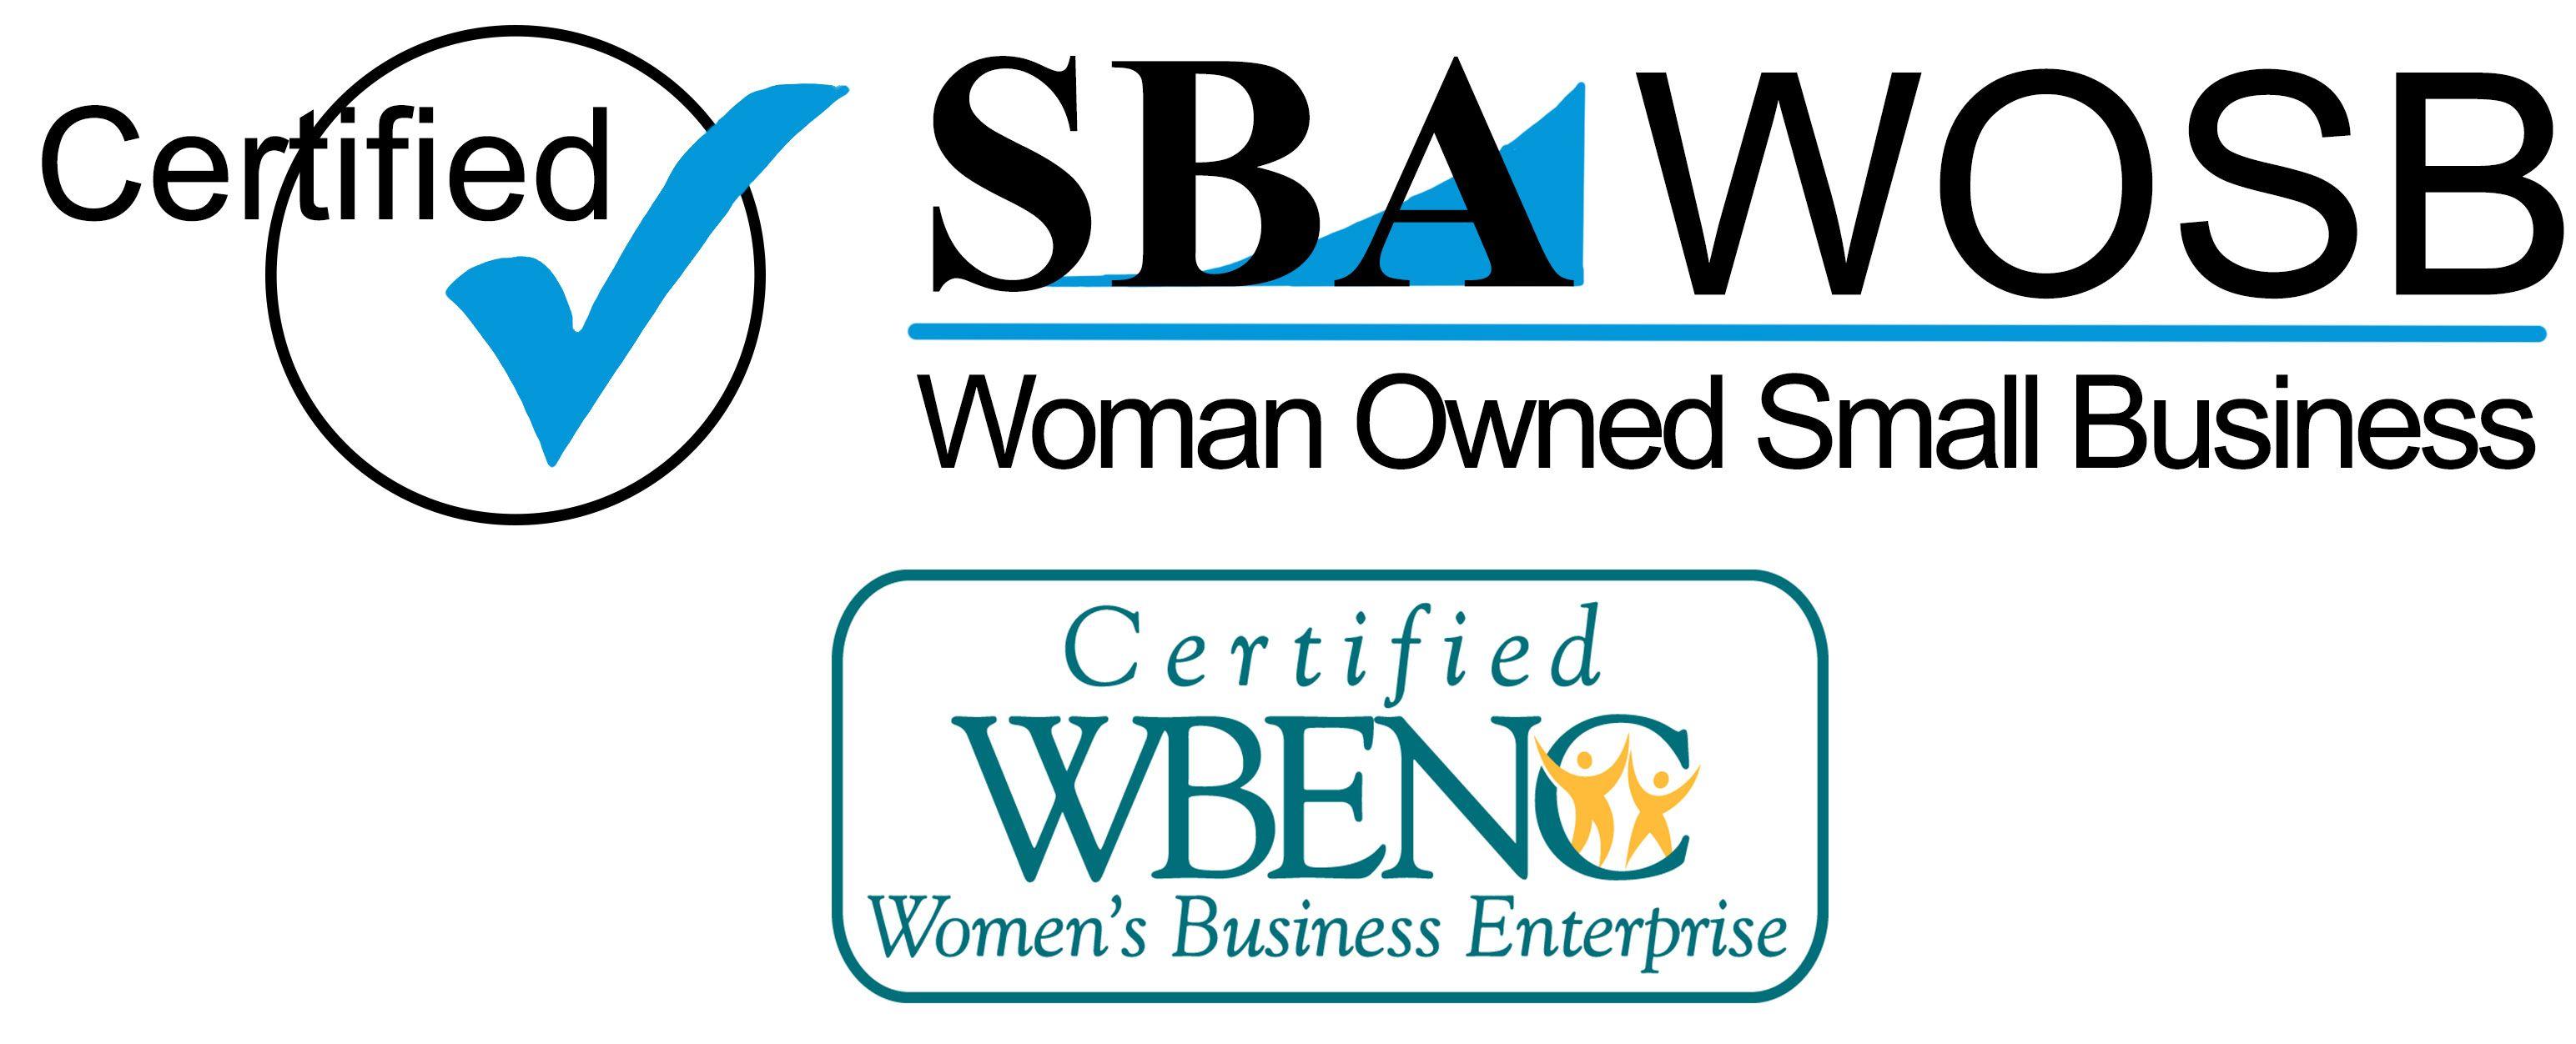 Wosb Logo - WOSB-WBENC_SBA_LOGO21 - Unify Health Services